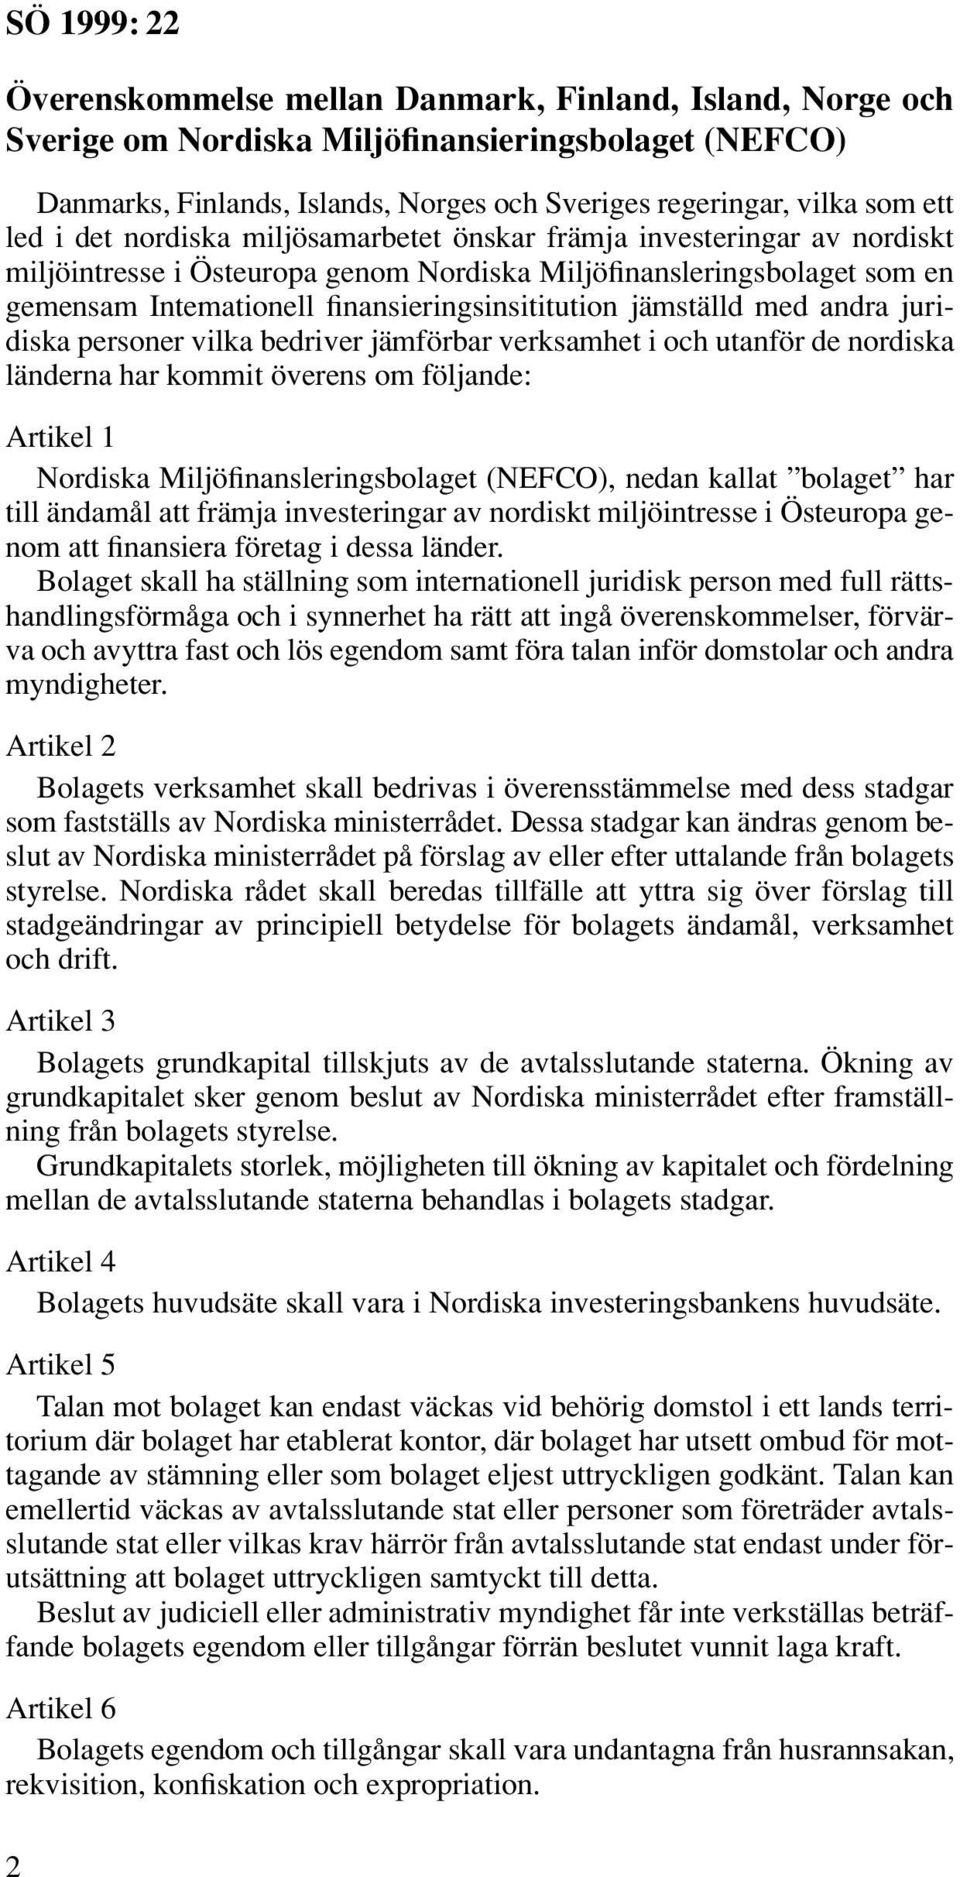 med andra juridiska personer vilka bedriver jämförbar verksamhet i och utanför de nordiska länderna har kommit överens om följande: Artikel 1 Nordiska Miljöfinansleringsbolaget (NEFCO), nedan kallat